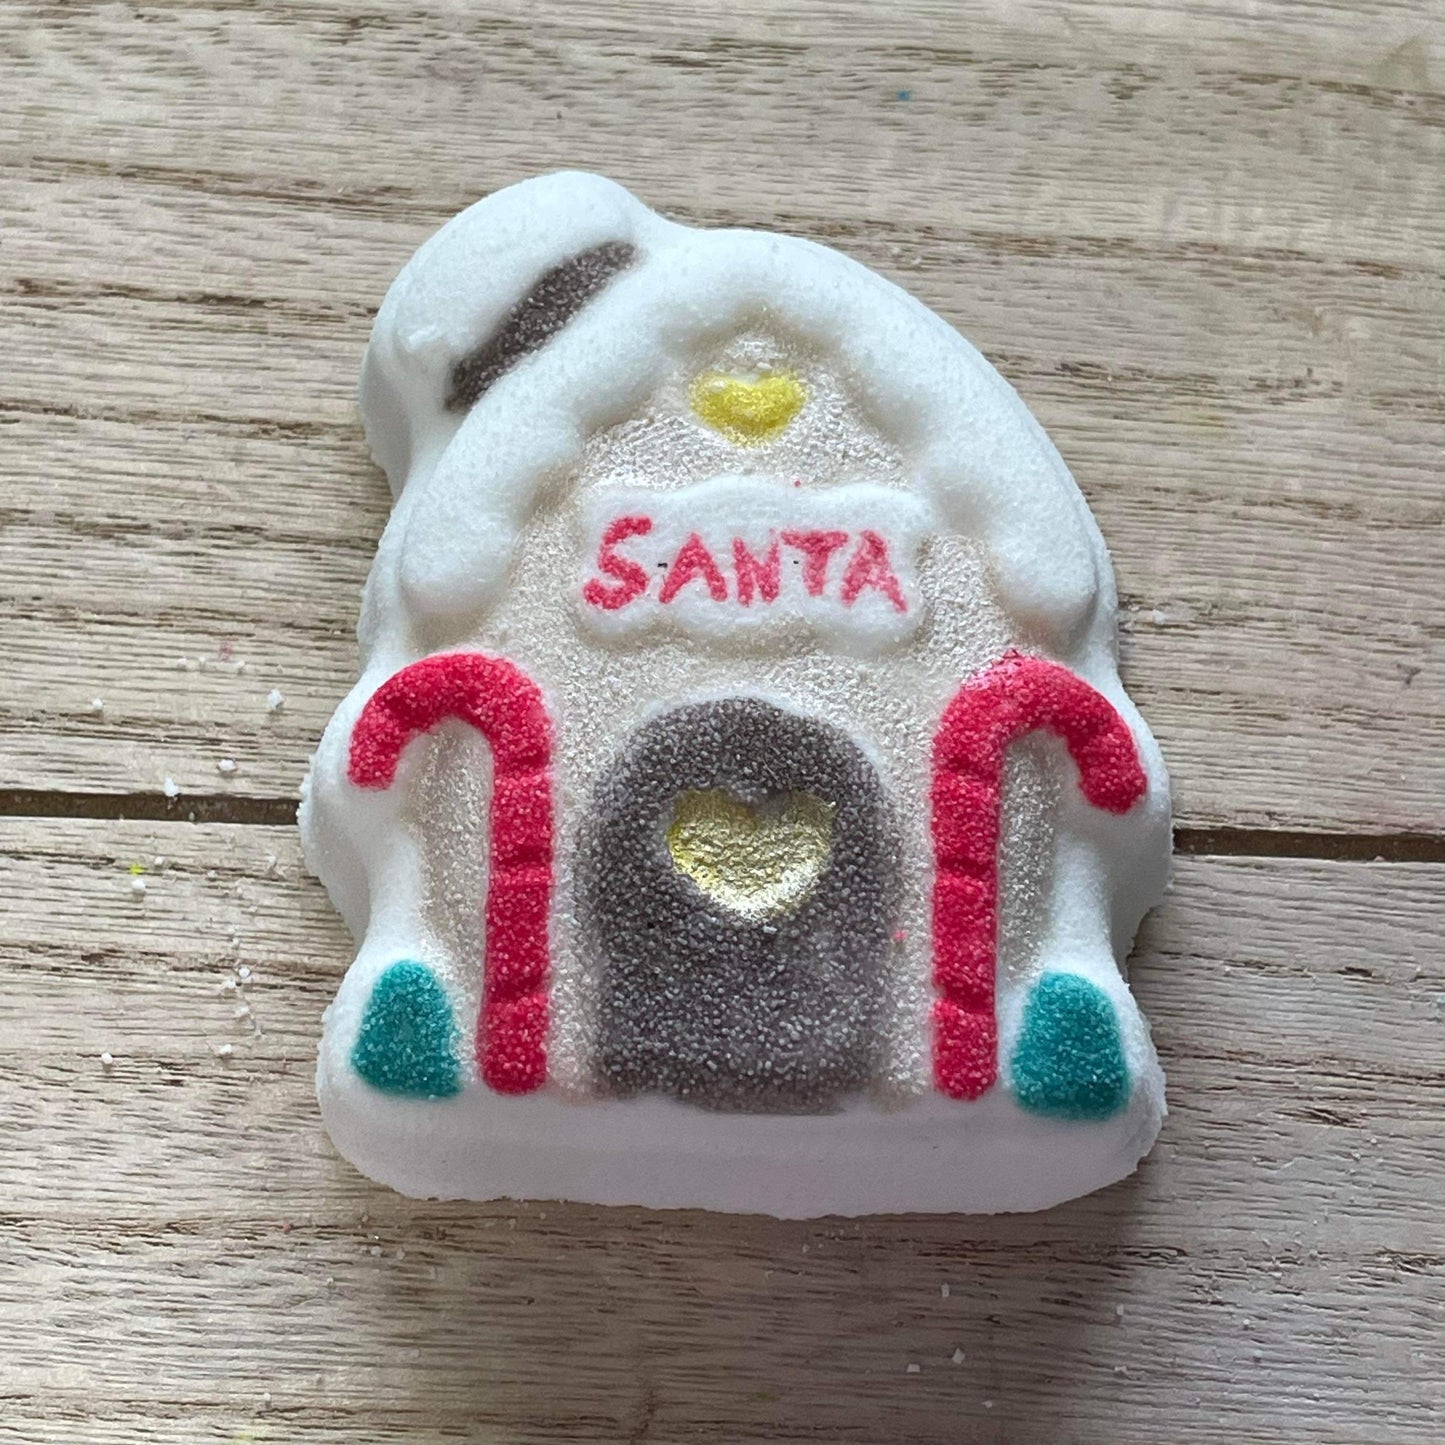 Santa’s House Bath Bomb Hand Mold 3Piece